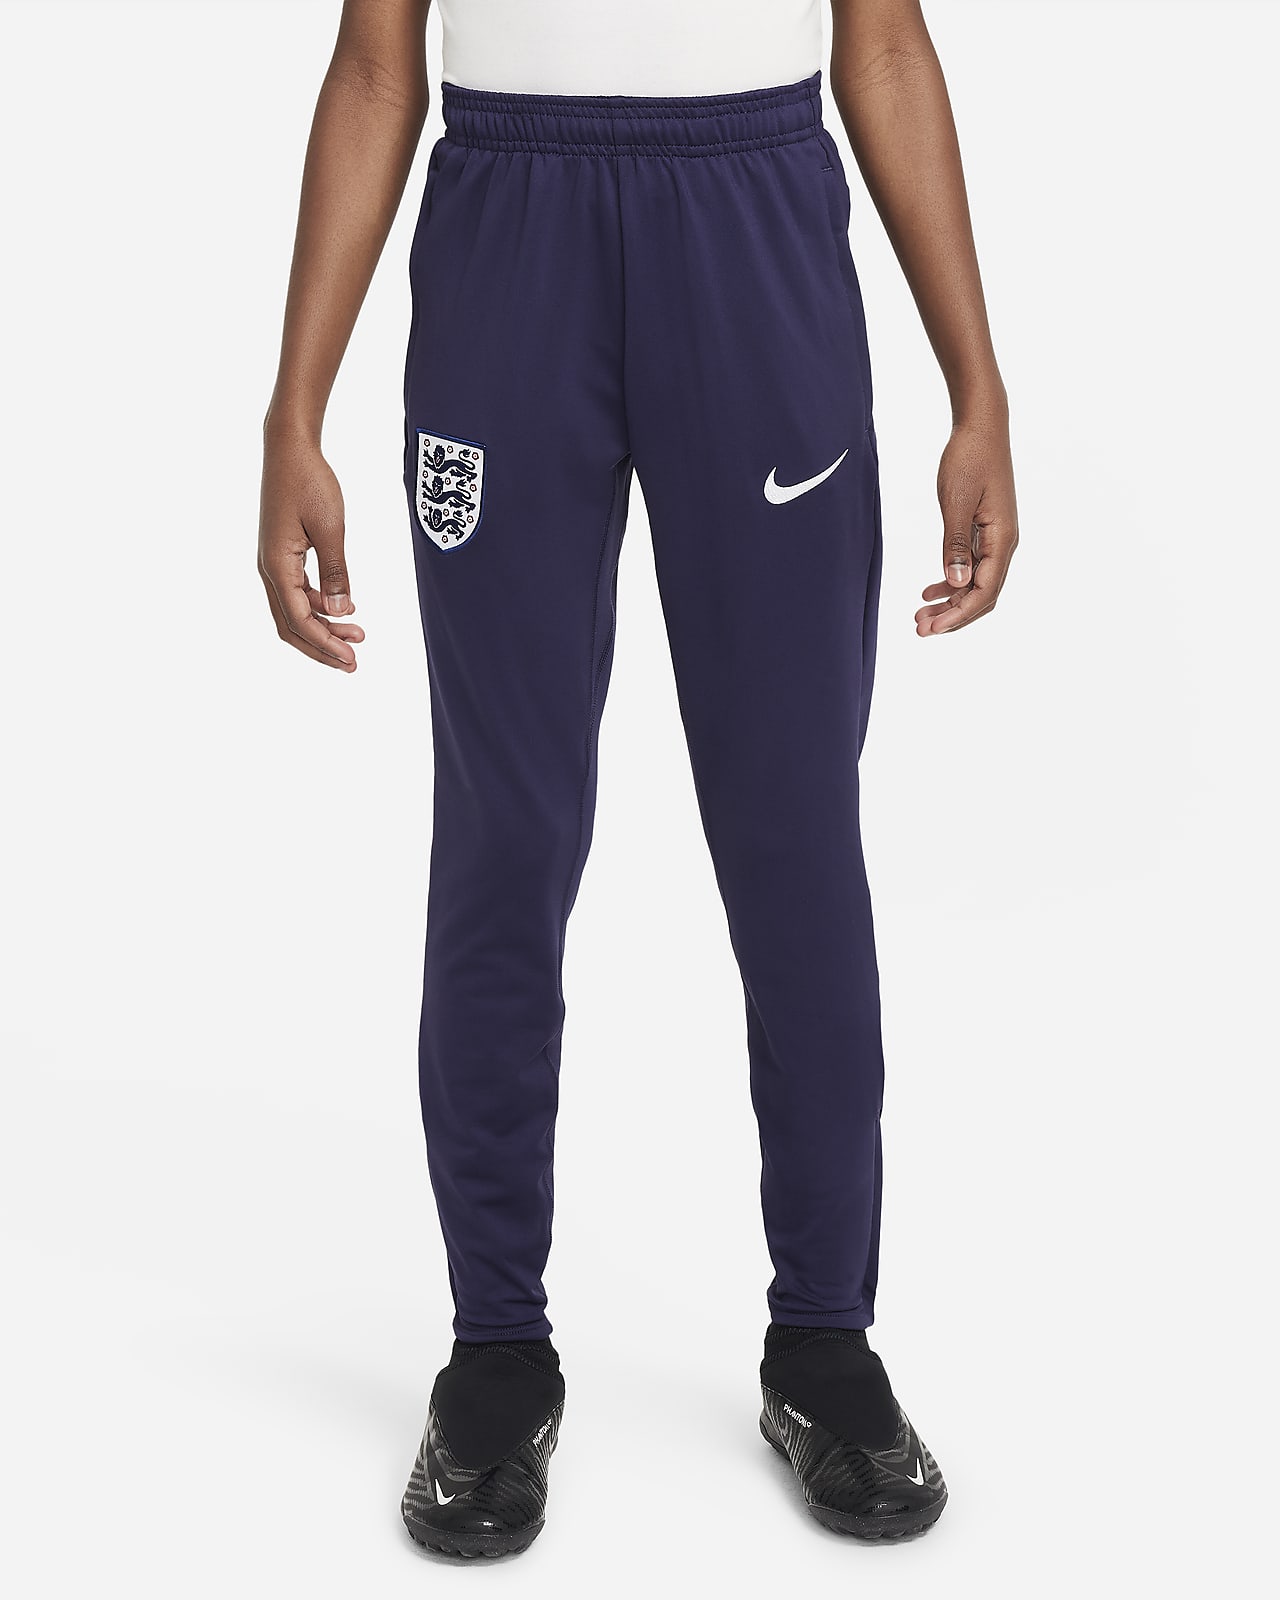 Engeland Strike Nike Dri-FIT knit voetbalbroek voor kids